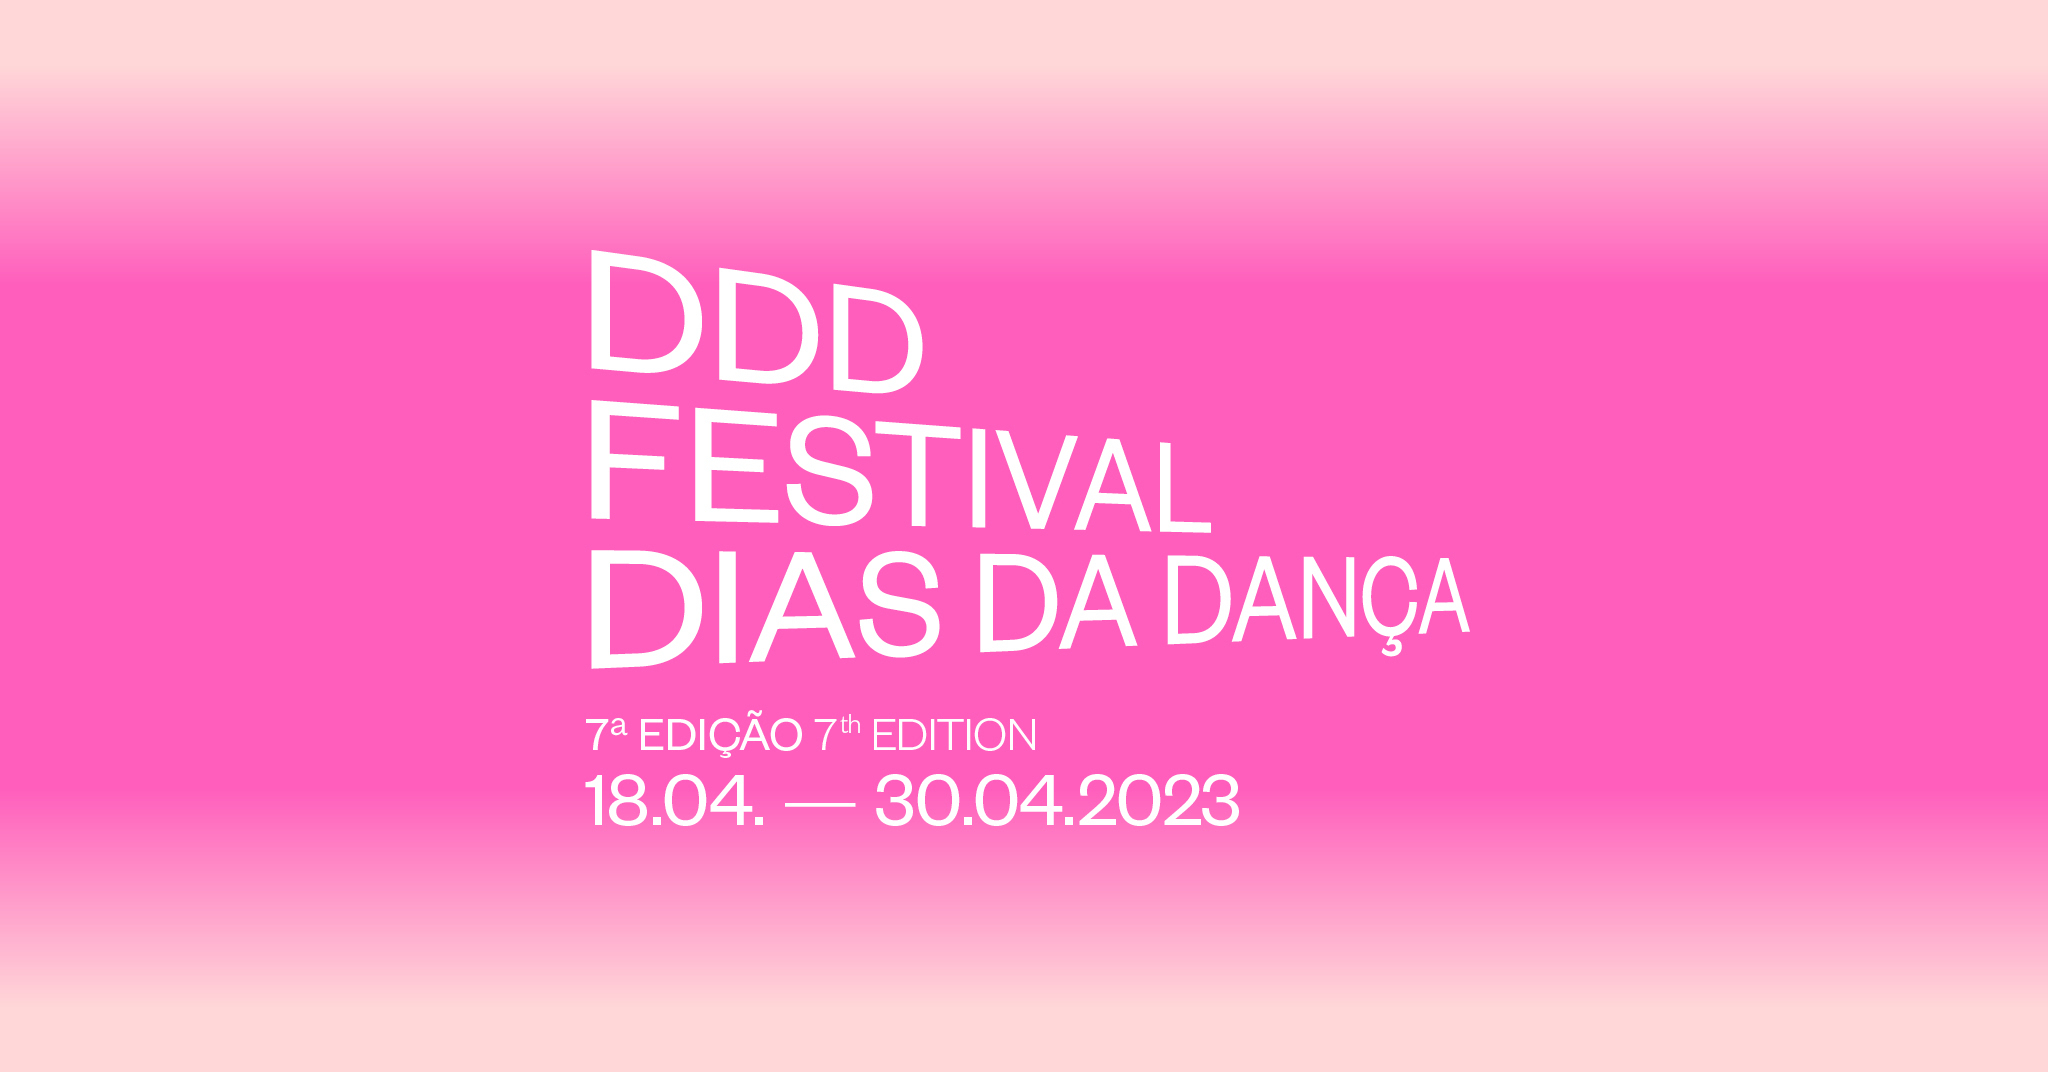 DDD - Festival Dias da Dança - Event